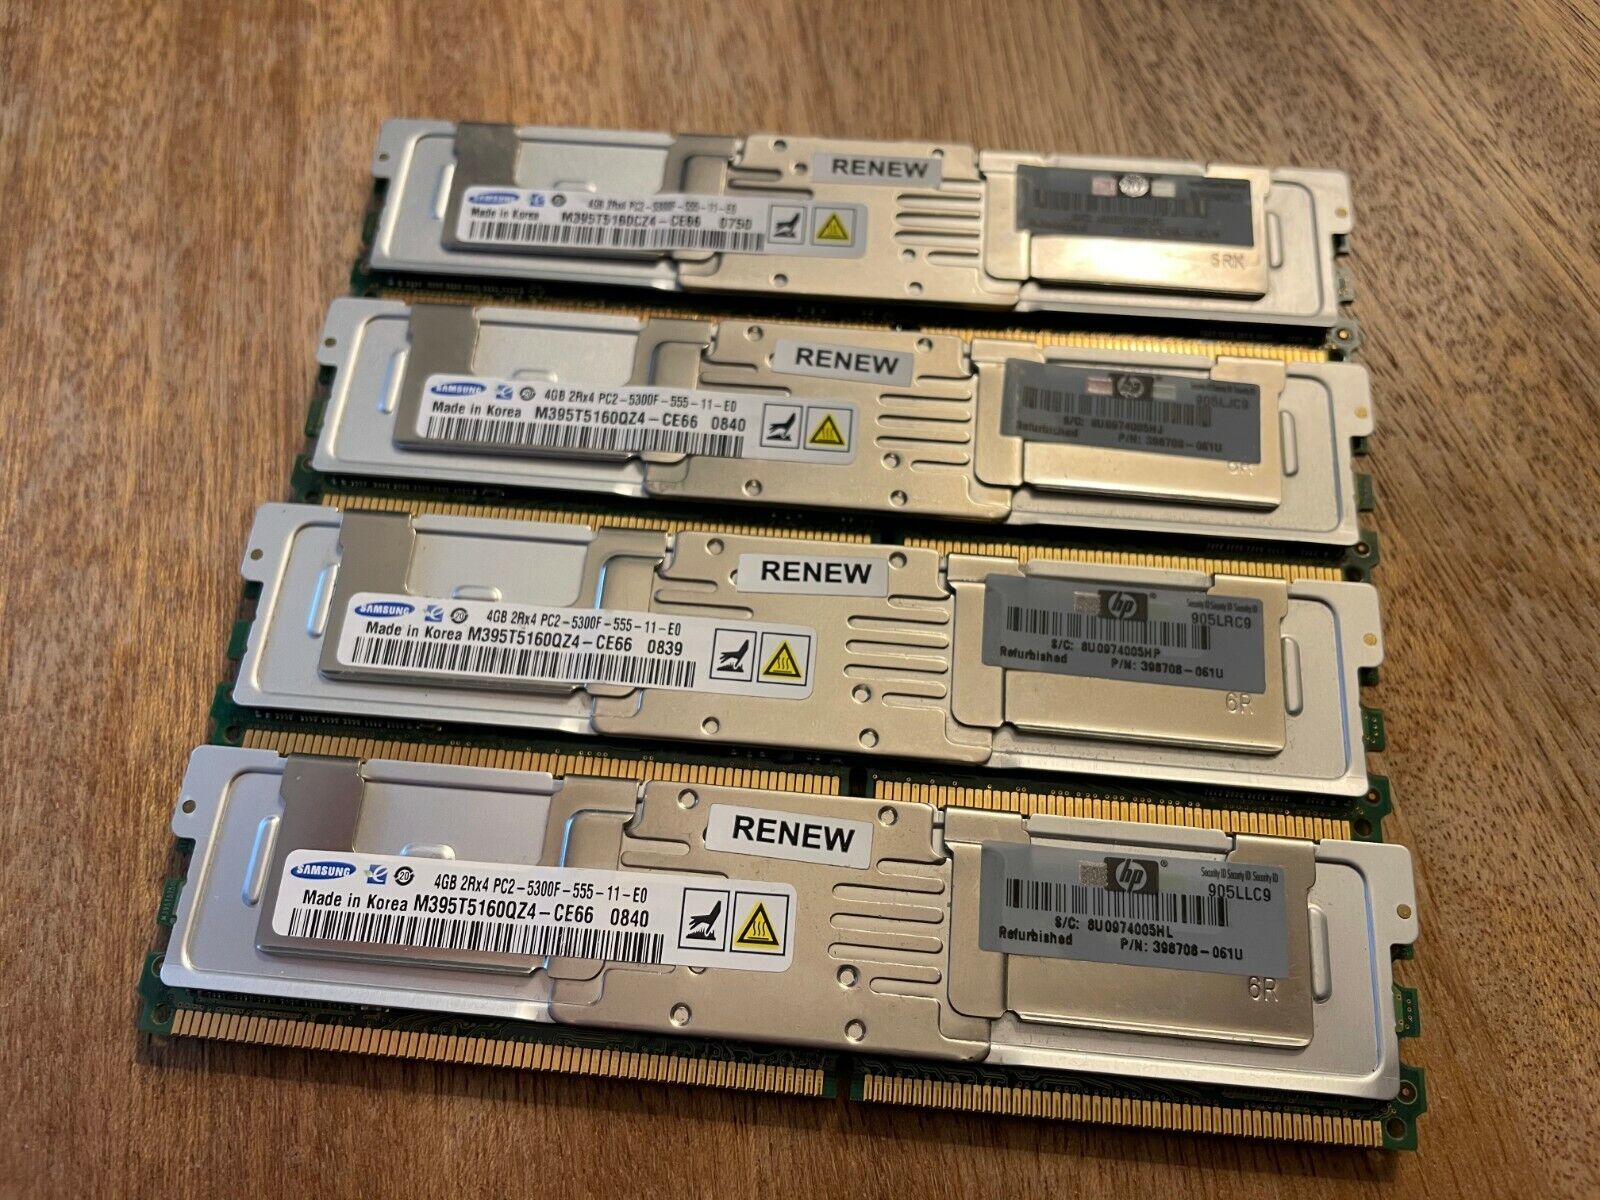 Lot of 4 Samsung 4GB 2Rx4 PC2-5300F-555-11-E0 ECC Memory Stick